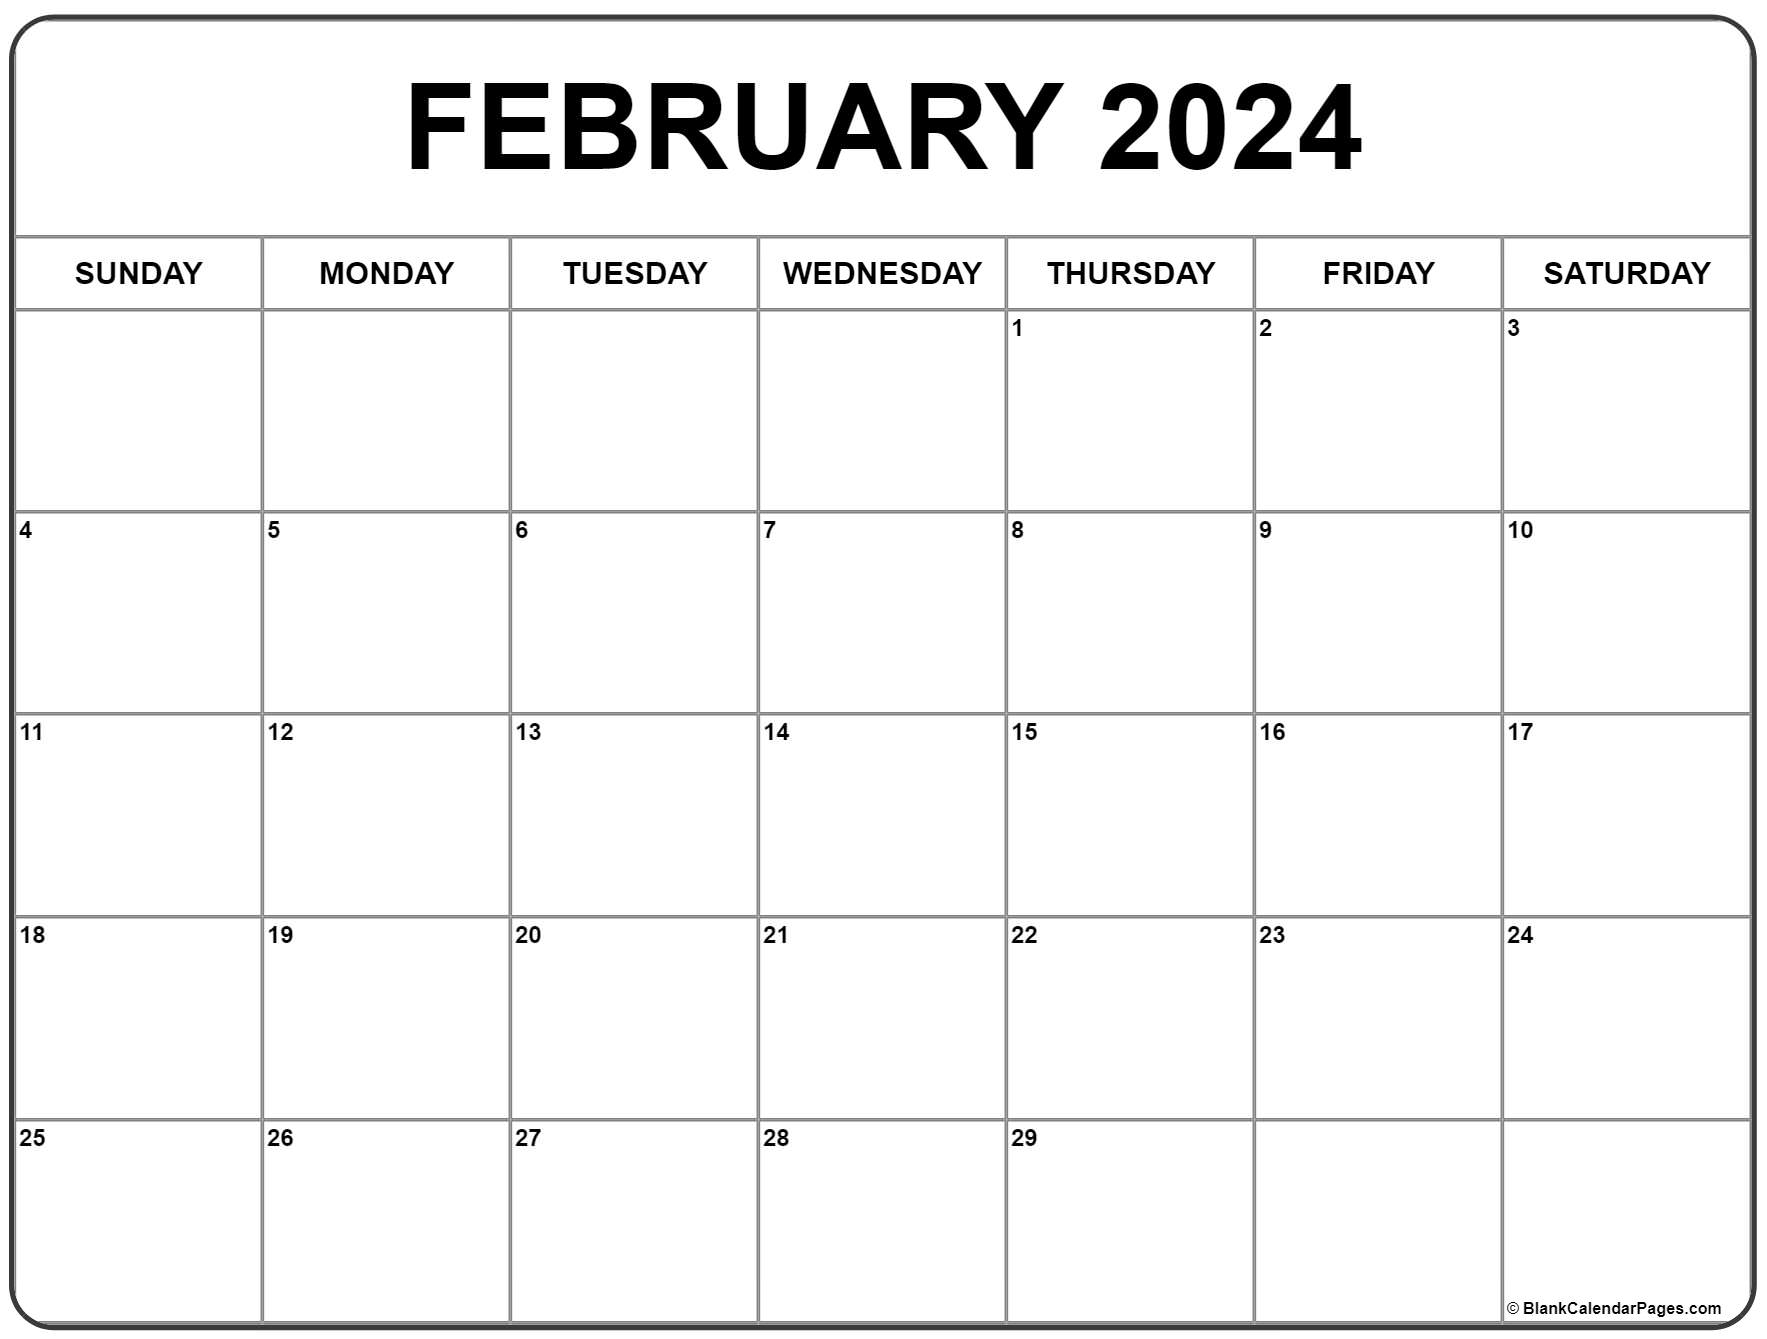 February 2024 Calendar | Free Printable Calendar for Blank Calendar February 2024 Free Printable